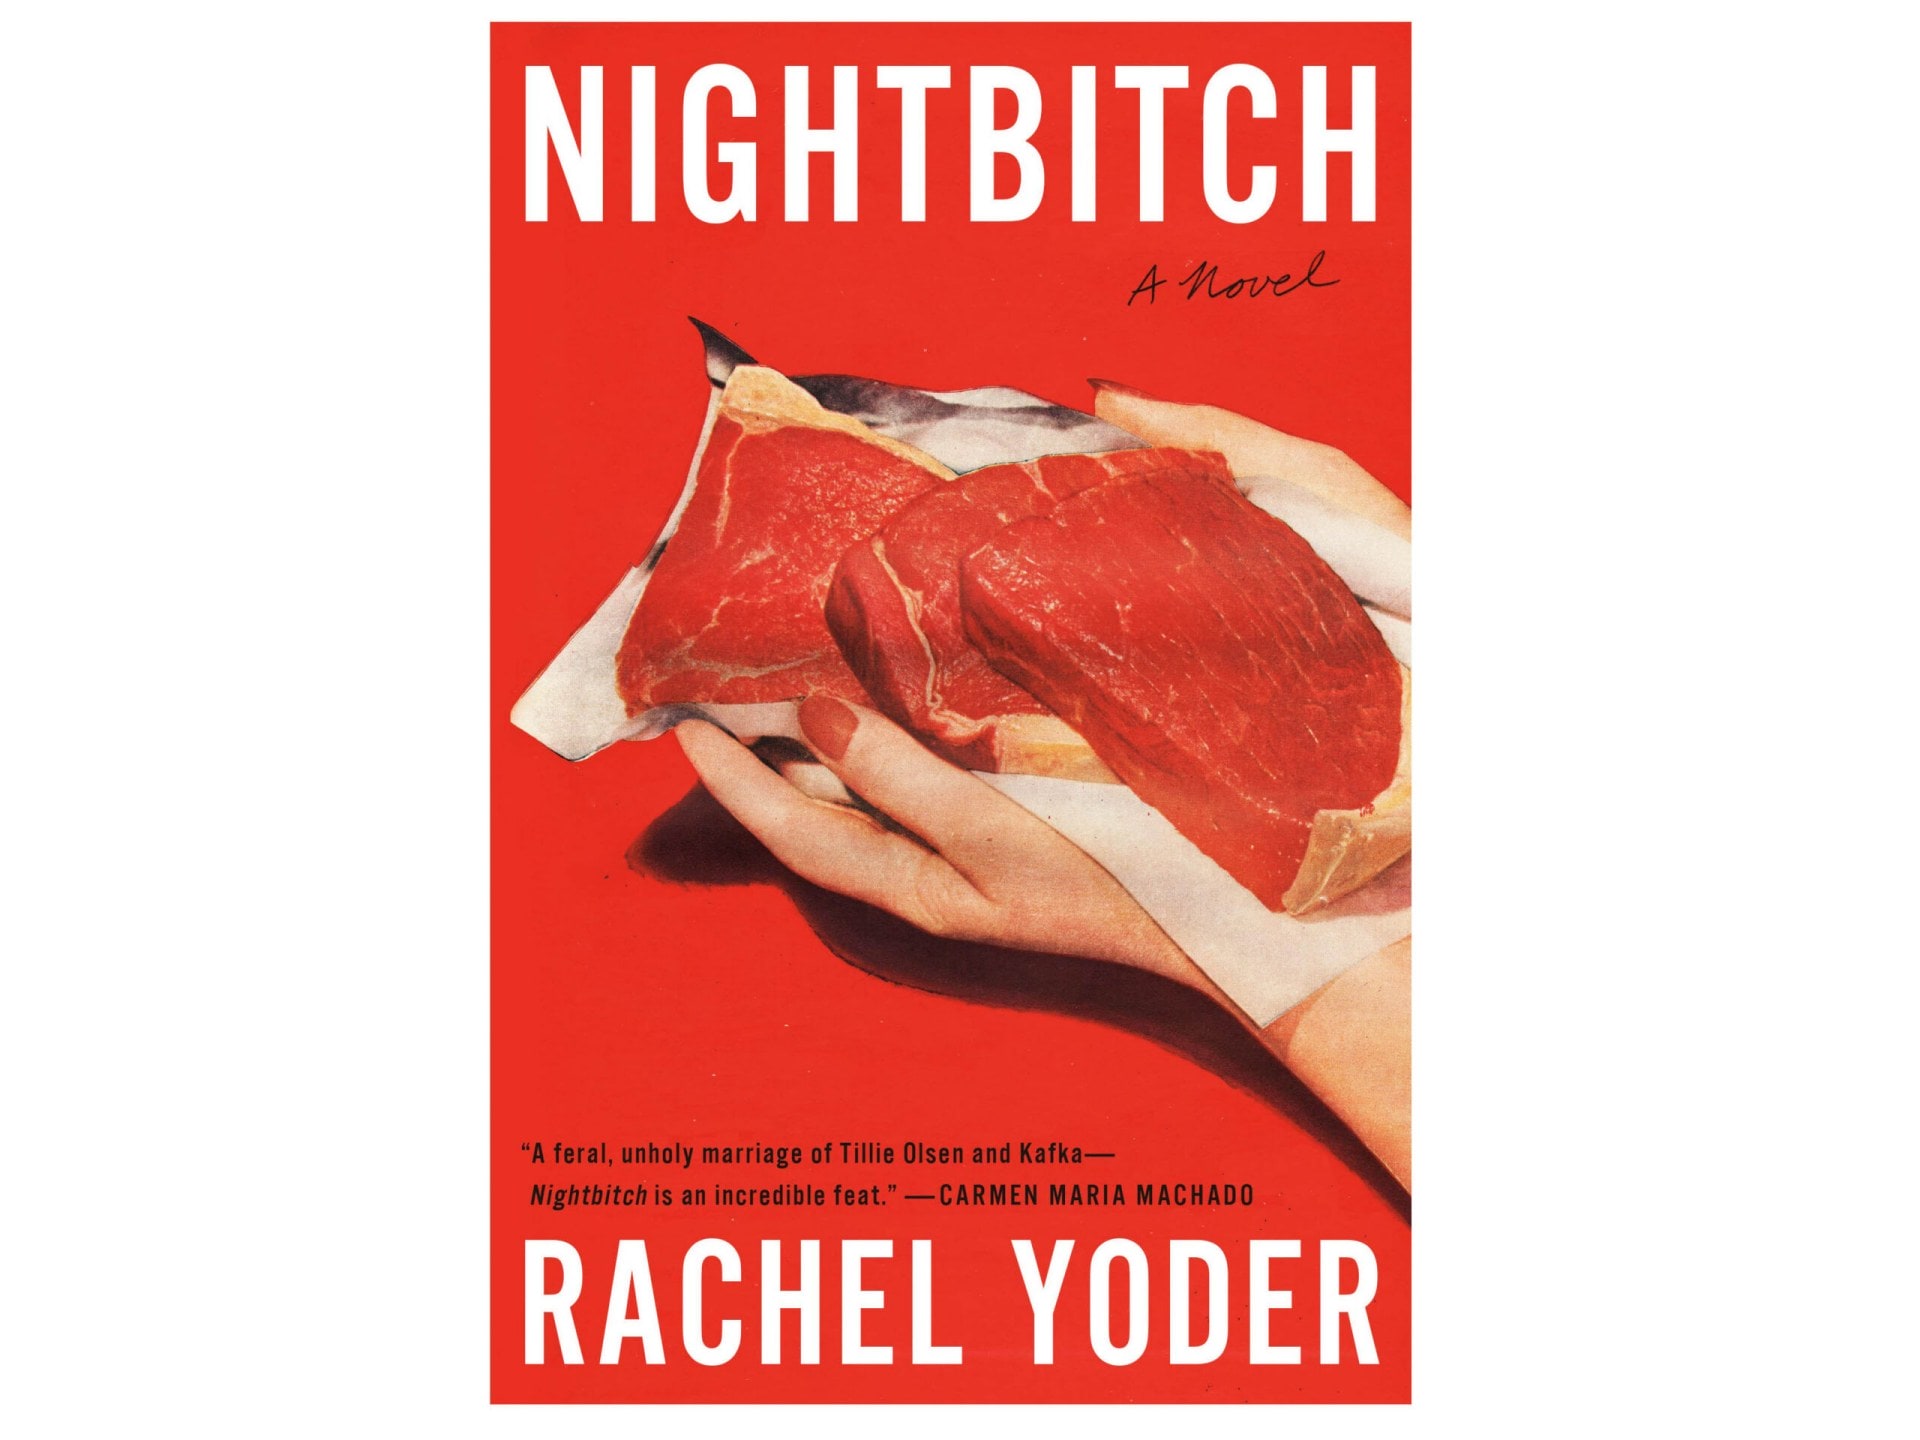 Night Bitch by Rachel Yoder, Harvill Secker, $35 